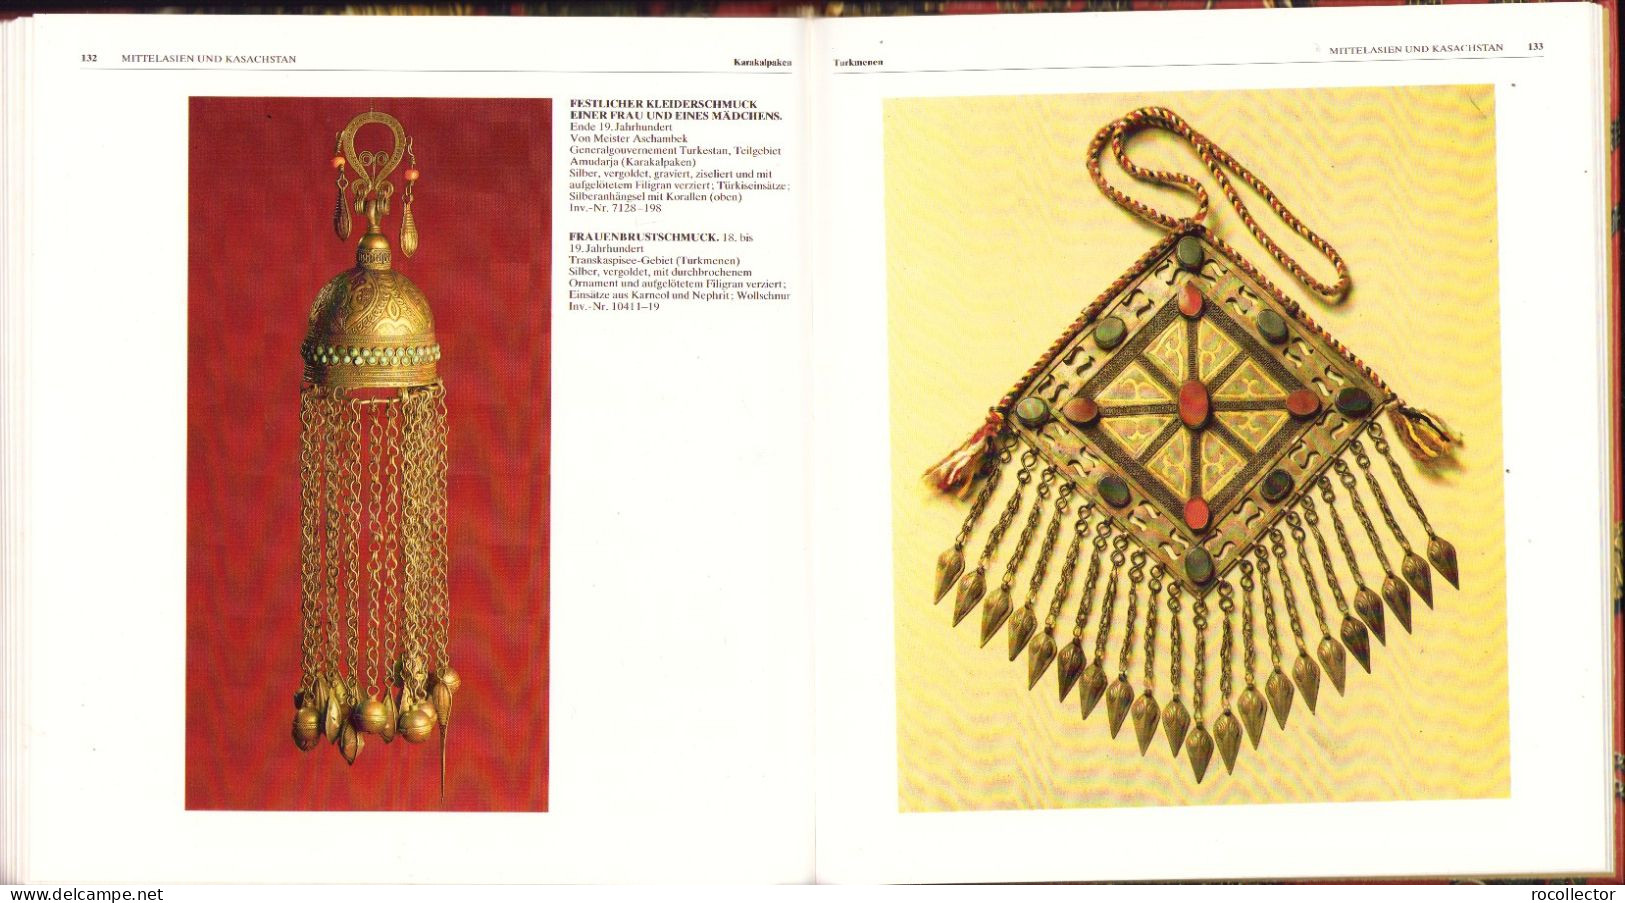 Juwelier-erzeugnisse zusammengestelt von Galina Komleva 1988 Ethnographisches Museum der Völker der UdSSR Leningrad